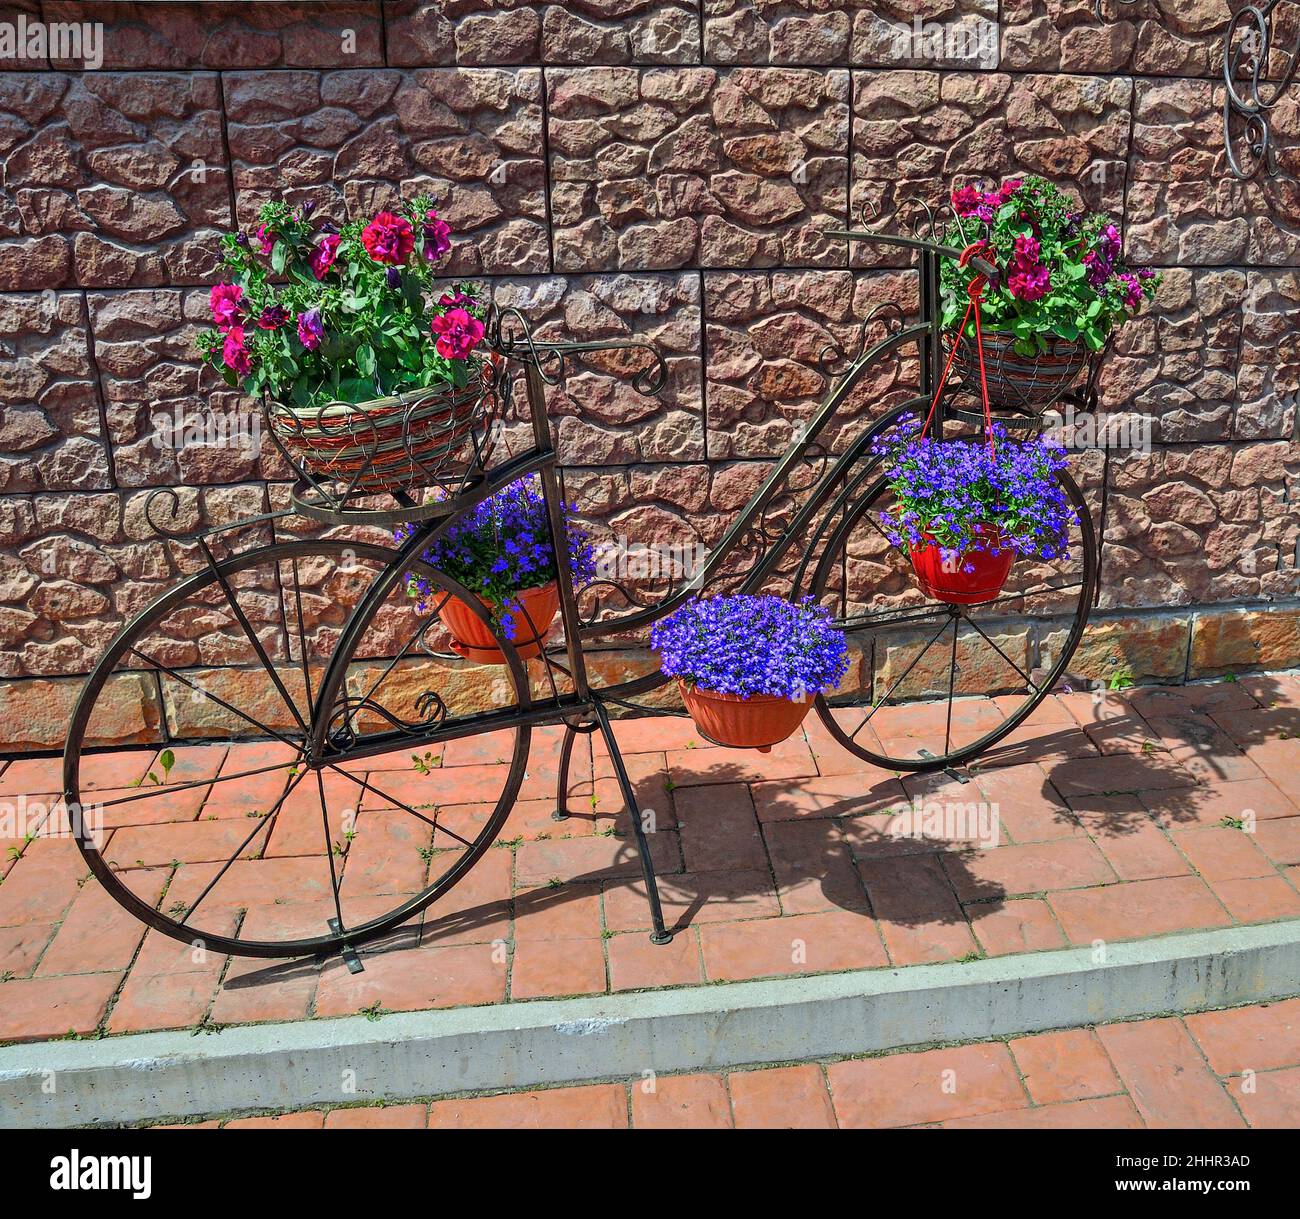 Bicicleta decorativa de metal de pie de flores con petunia rojo en cestas y flores de lobelia azul en macetas, de pie al aire libre cerca de la pared - elegante diciembre Foto de stock